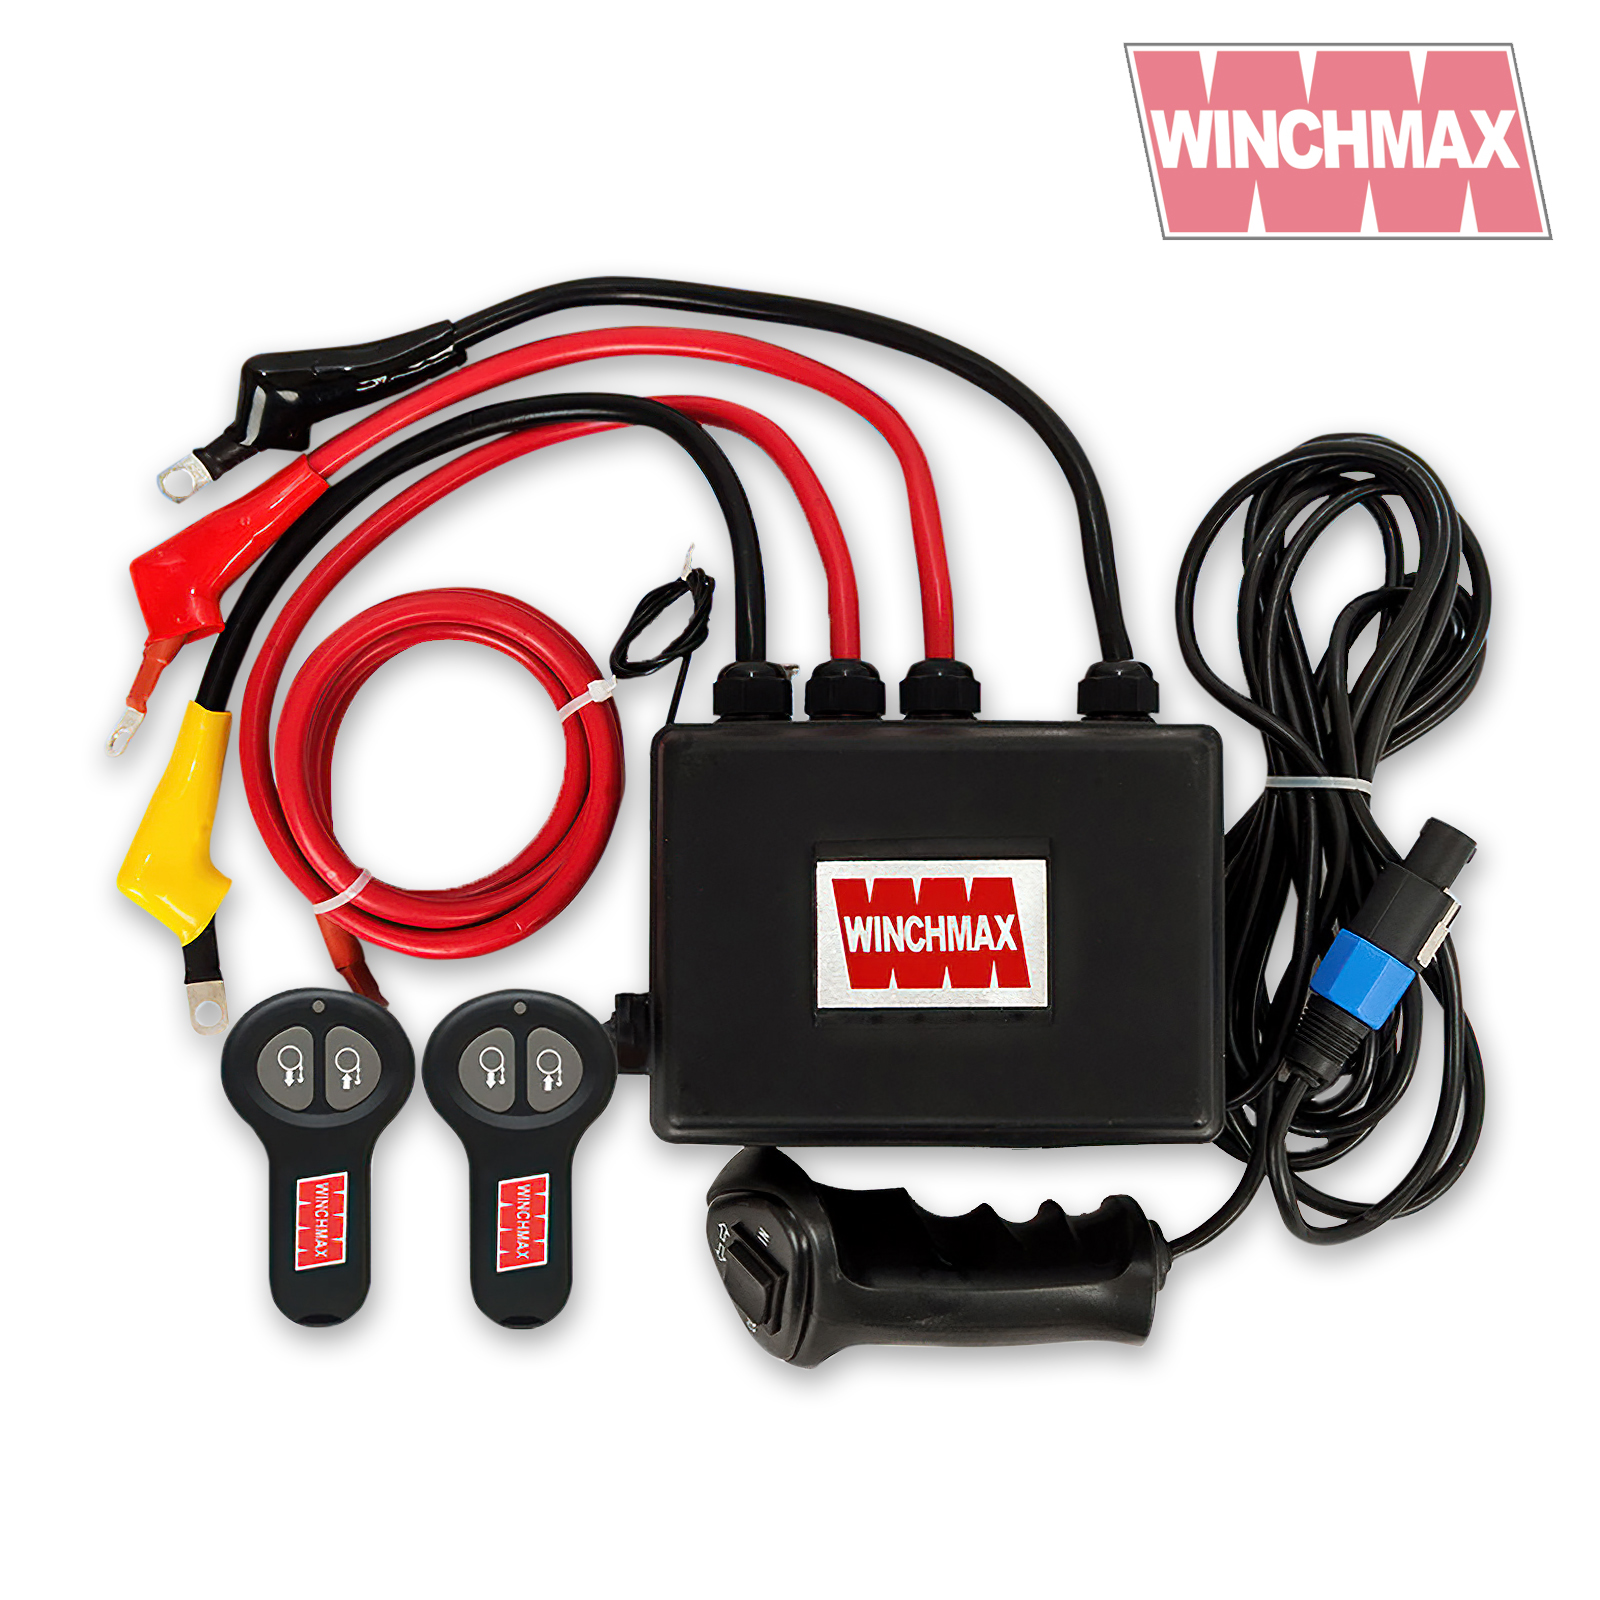 WINCHMAX Complete 24V Electric Winch Control Box